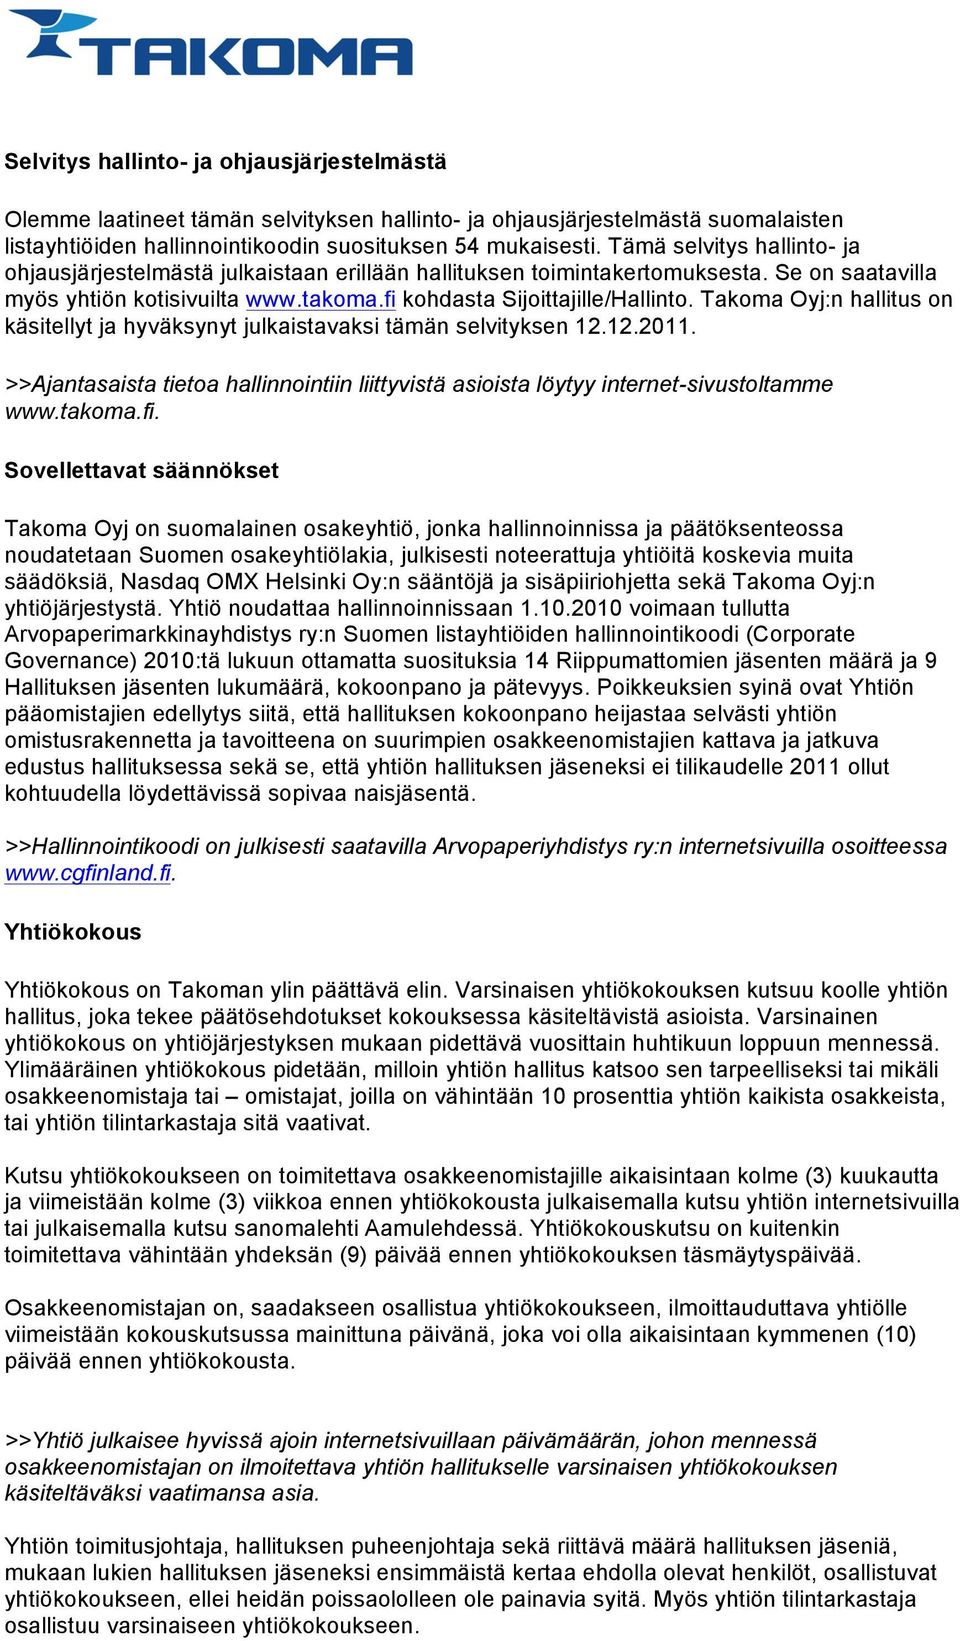 Takoma Oyj:n hallitus on käsitellyt ja hyväksynyt julkaistavaksi tämän selvityksen 12.12.2011. >>Ajantasaista tietoa hallinnointiin liittyvistä asioista löytyy internet-sivustoltamme www.takoma.fi.